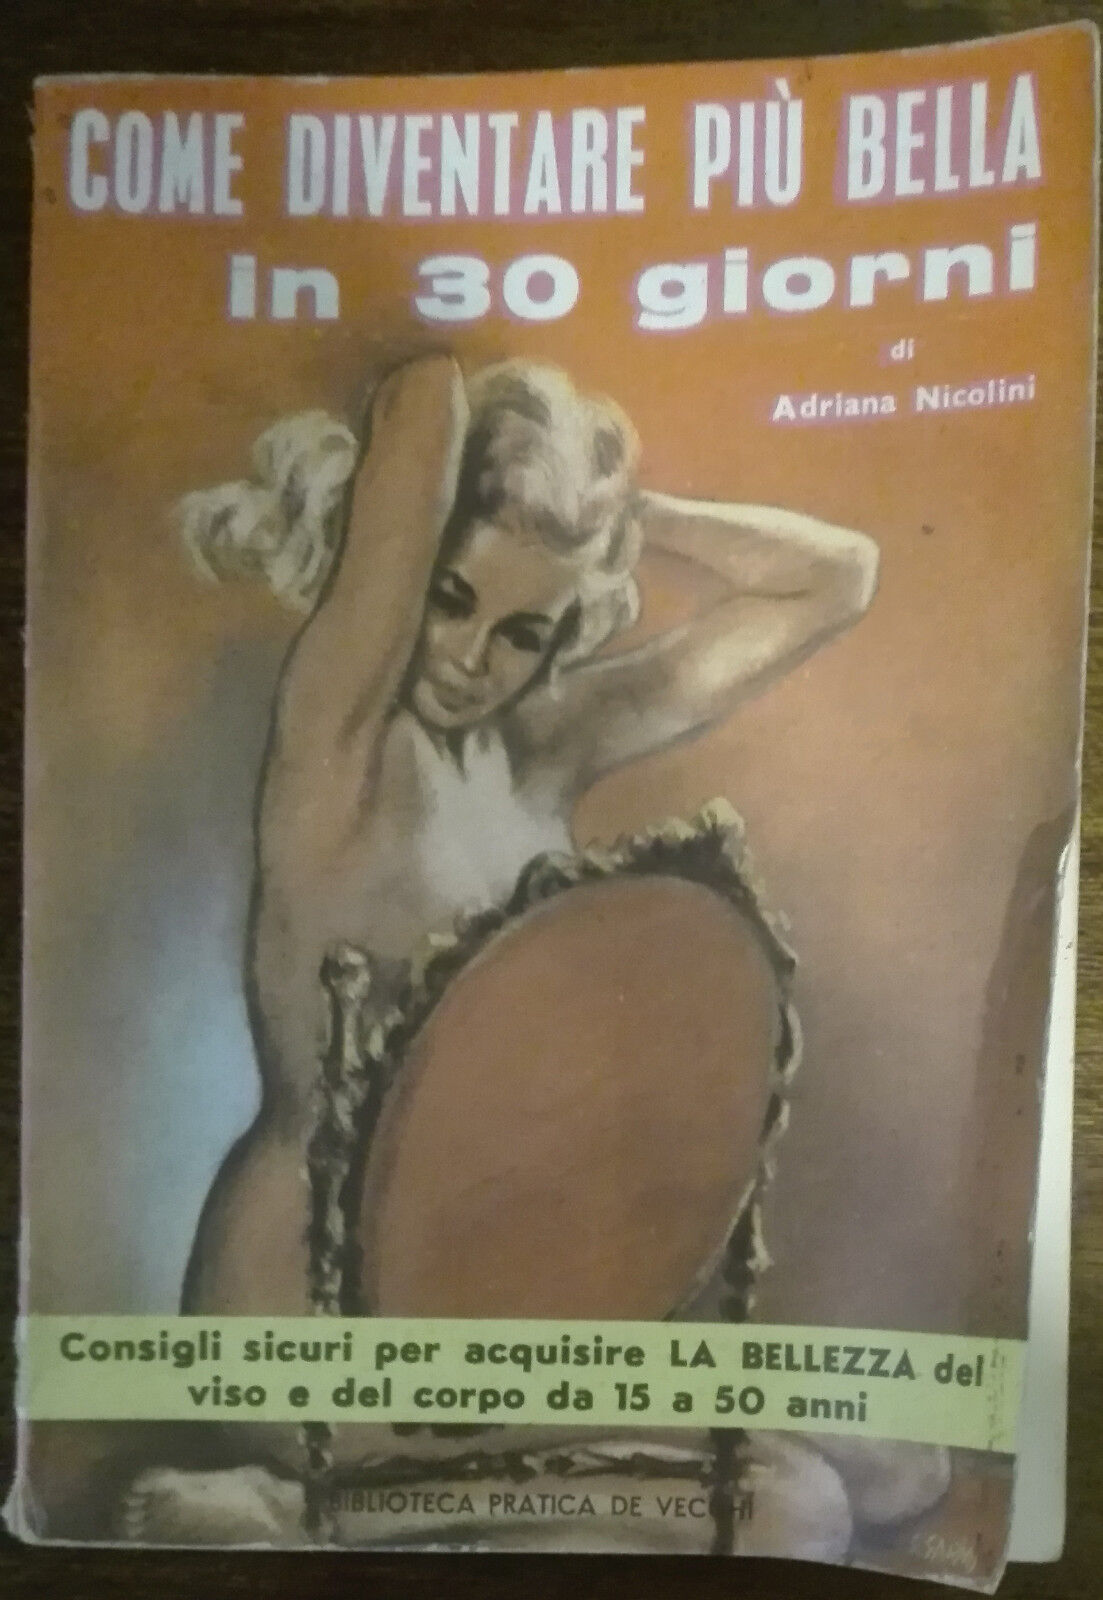 Come diventare pi? bella in 30 giorni - Adriana Nicolini - De Vecchi,1961 - A